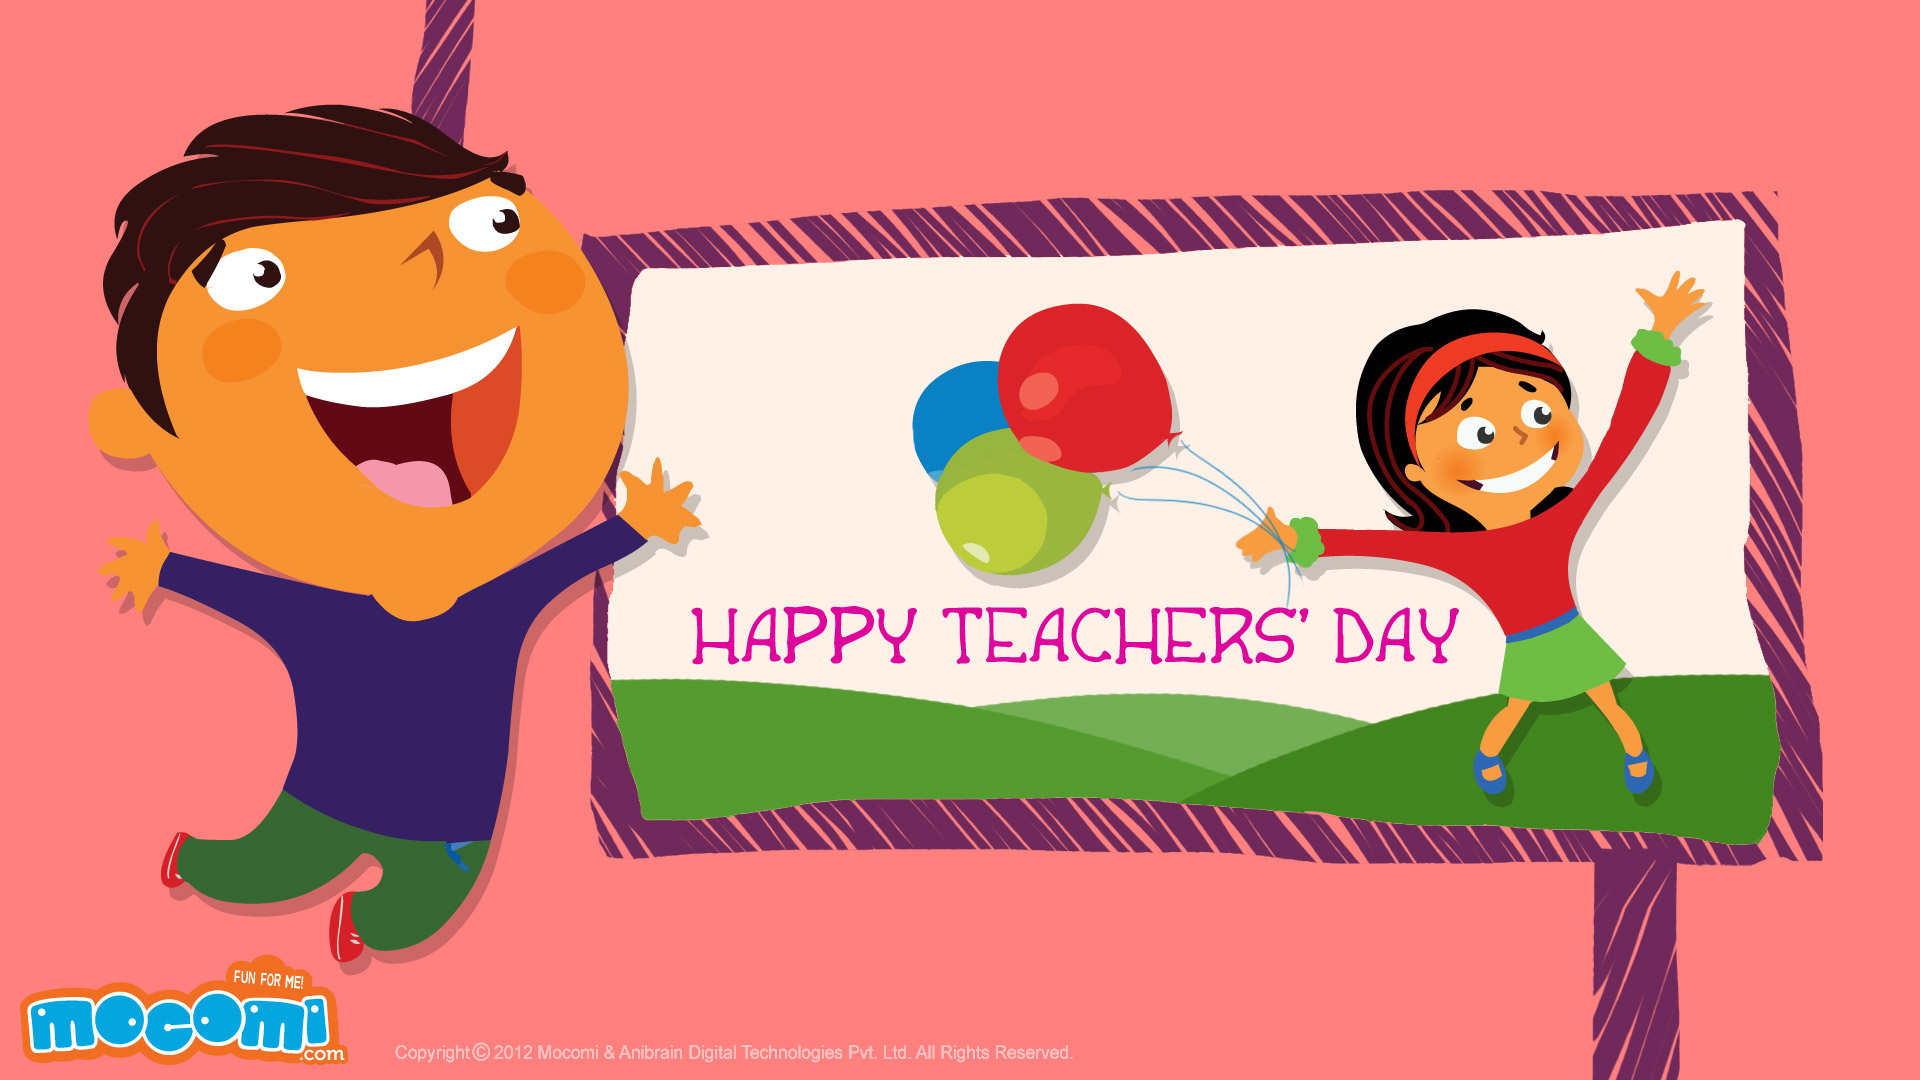 Happy Teachers' Day 03 - Desktop Wallpapers for Kids | Mocomi